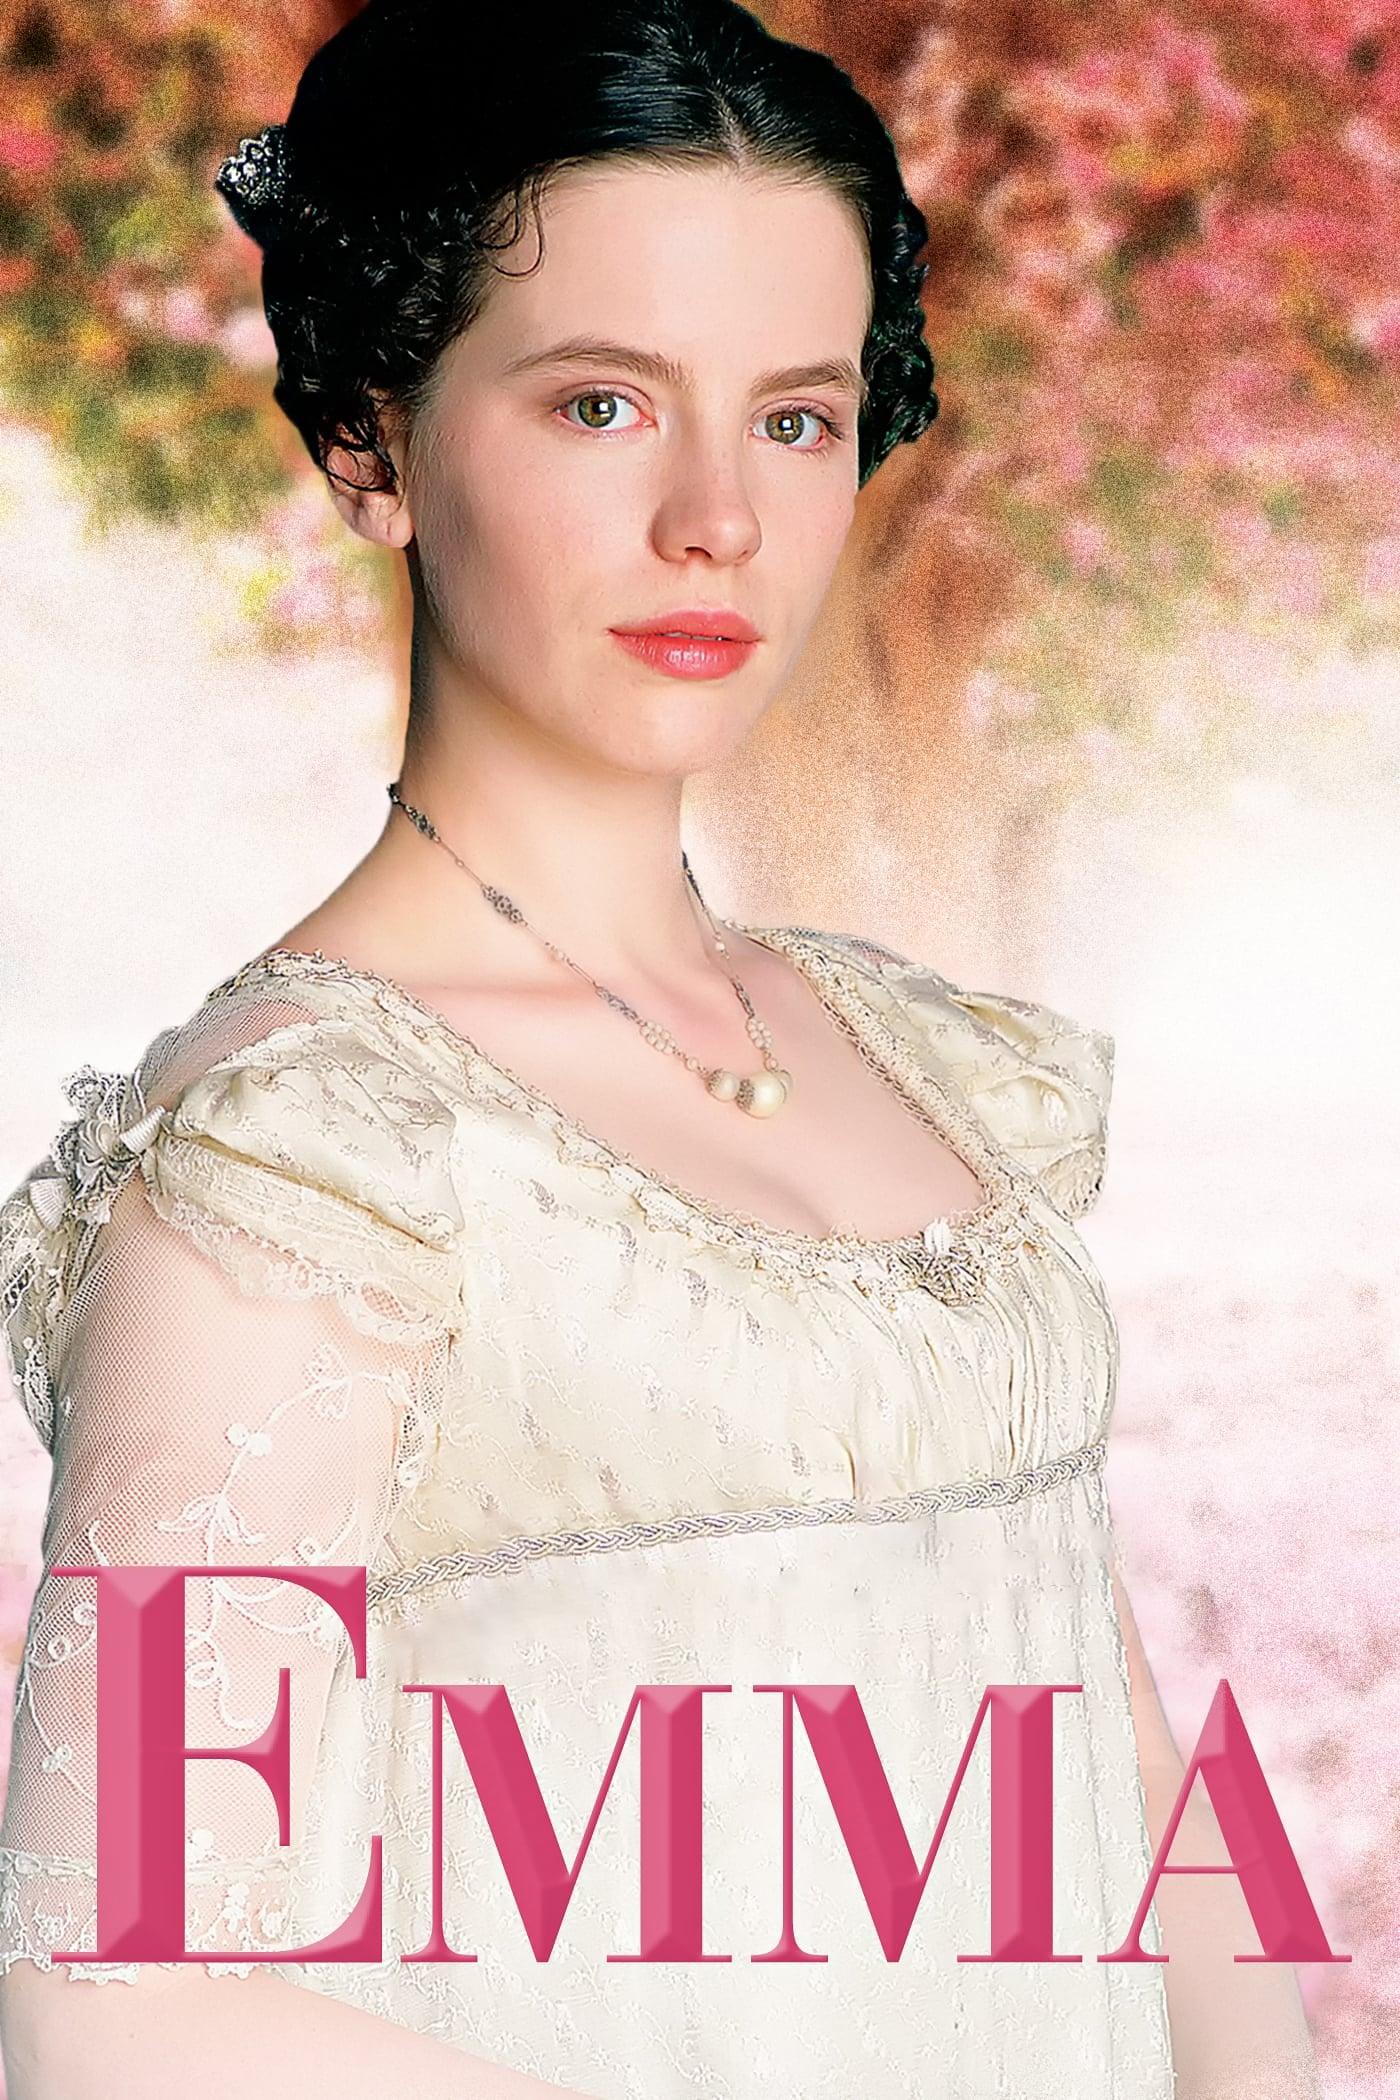 Jane Austen's Emma poster